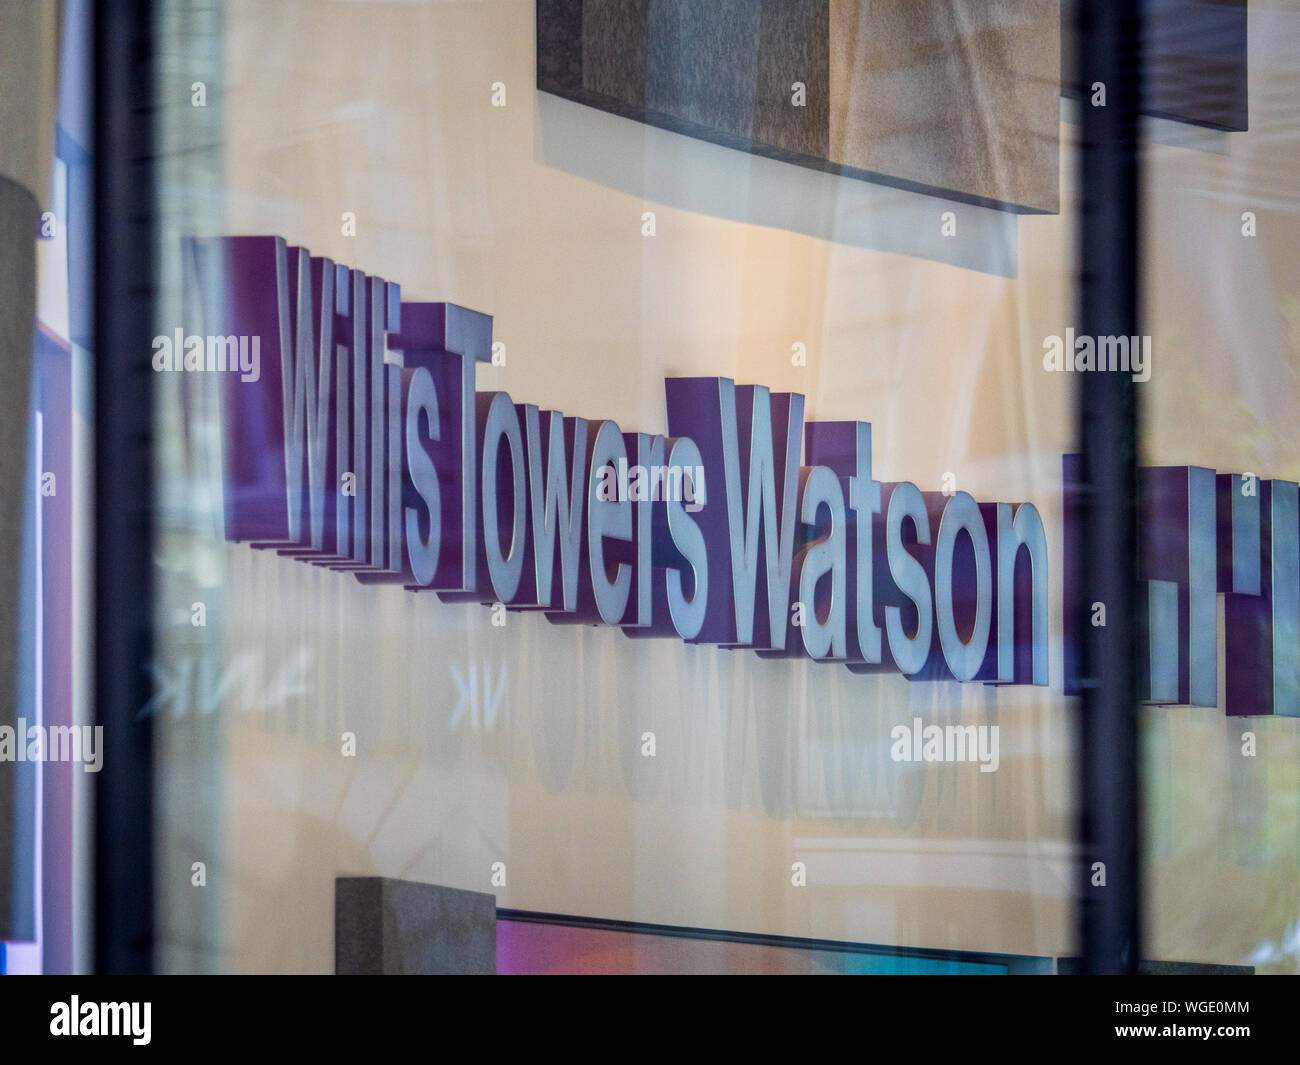 Willis Towers Watson HQ. Willis Towers Watson Insurance Company HQ / sede centrale in Lime Street nella City of London, il quartiere finanziario di Londra Foto Stock